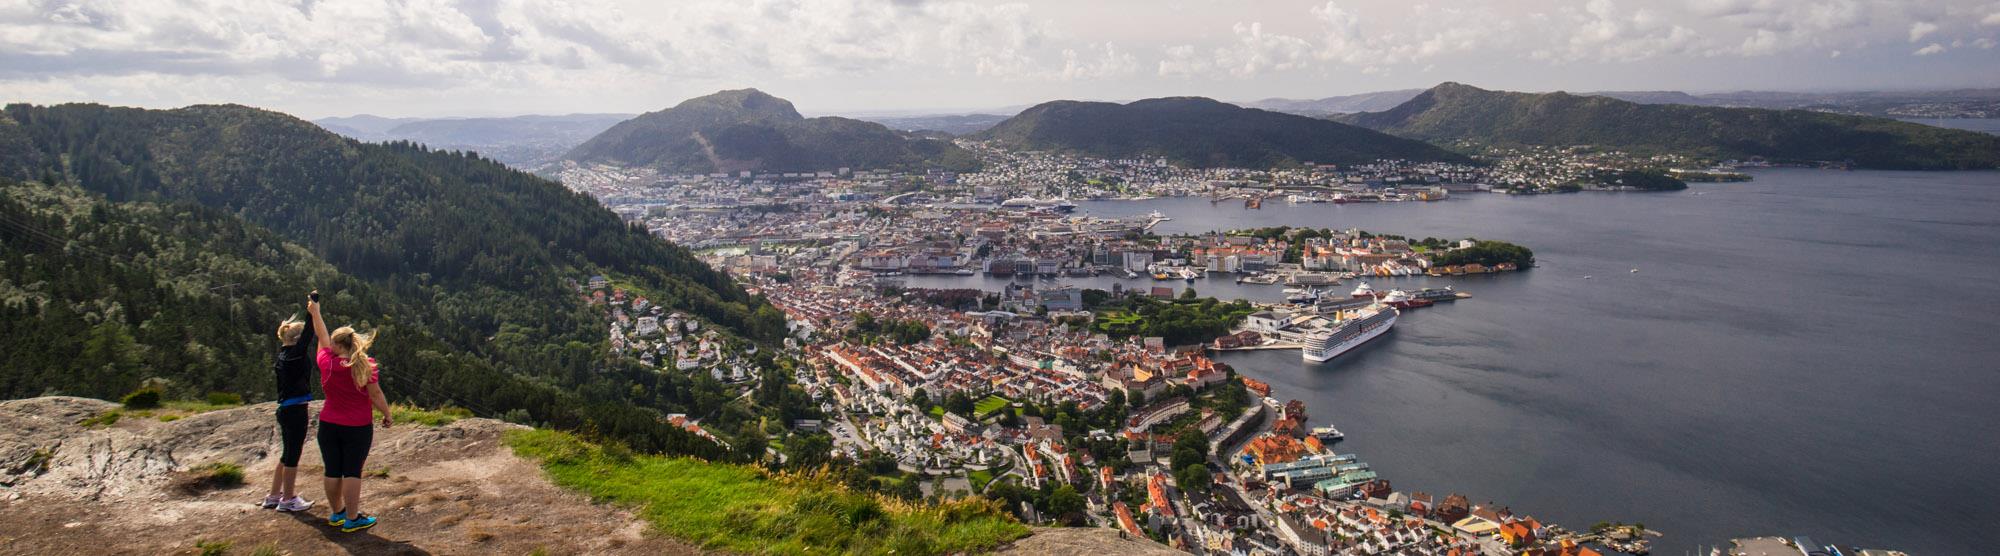 Activities in Bergen - visitBergen.com